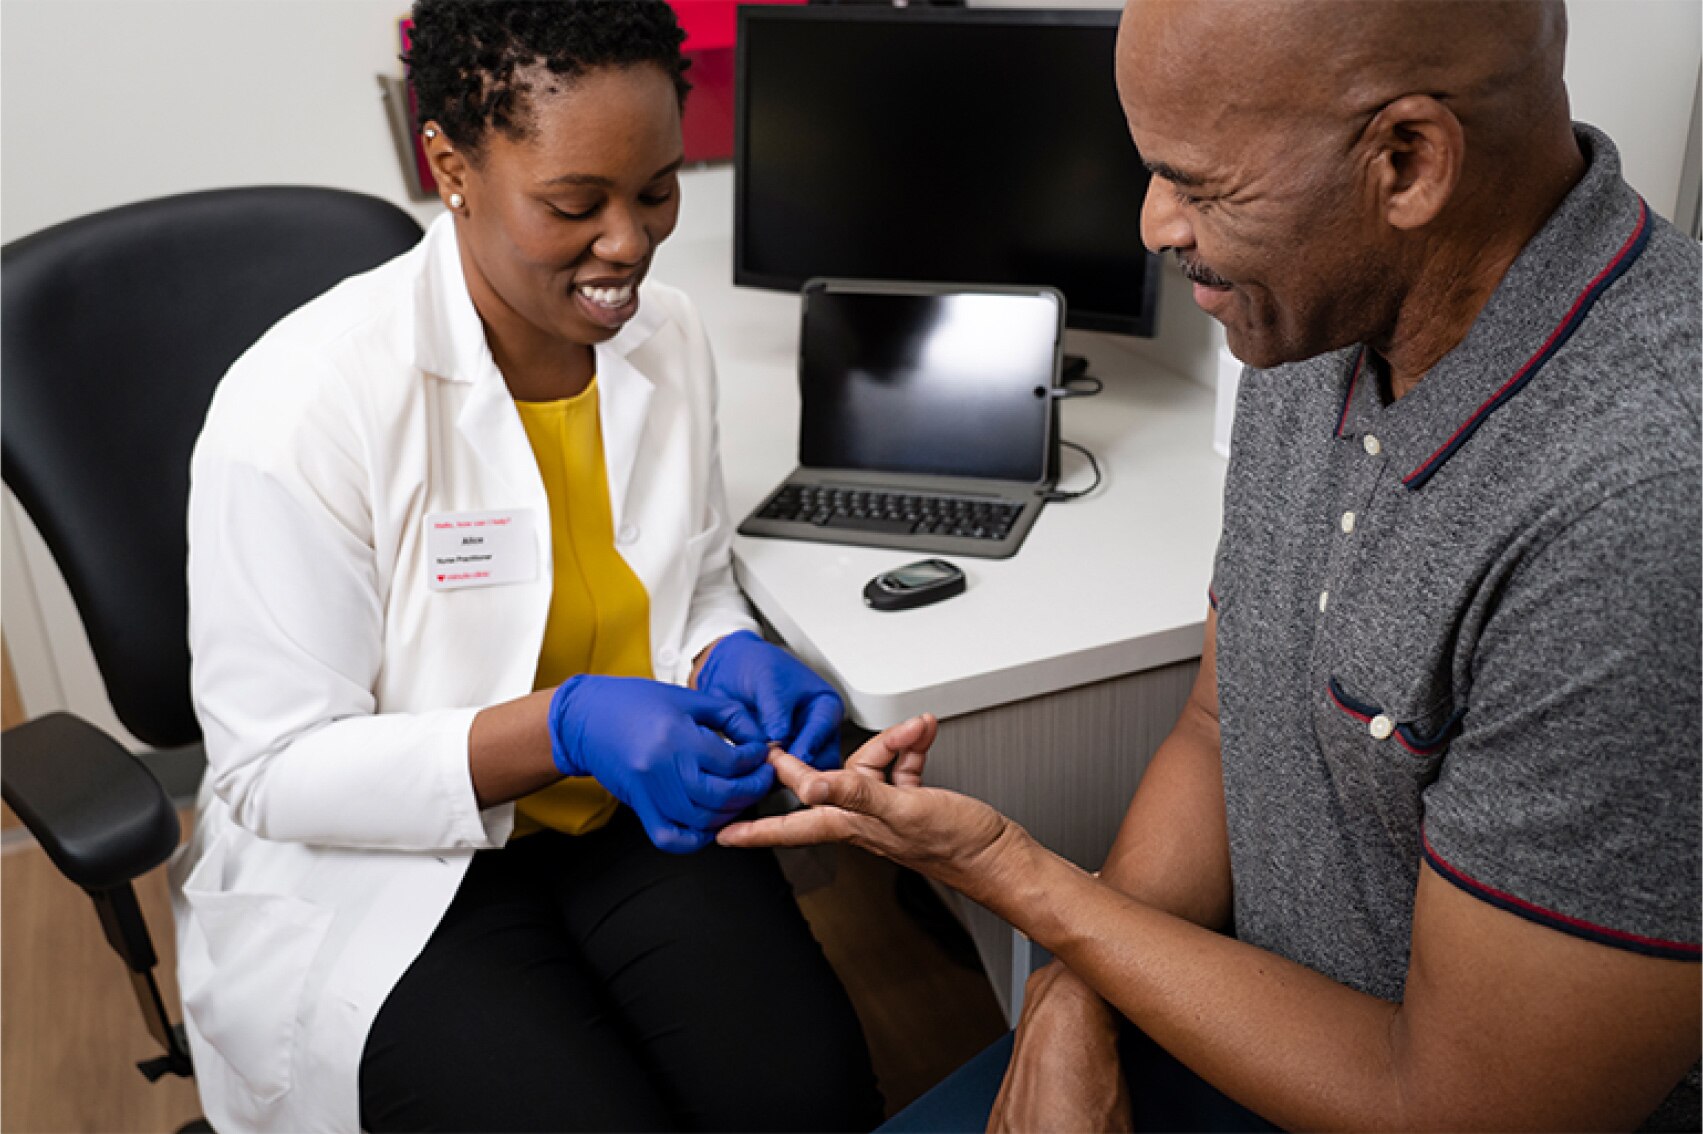 Un proveedor de MinuteClinic coloca una venda en el dedo del paciente luego de extraer una muestra de sangre para la prueba de glucosa en una clínica.